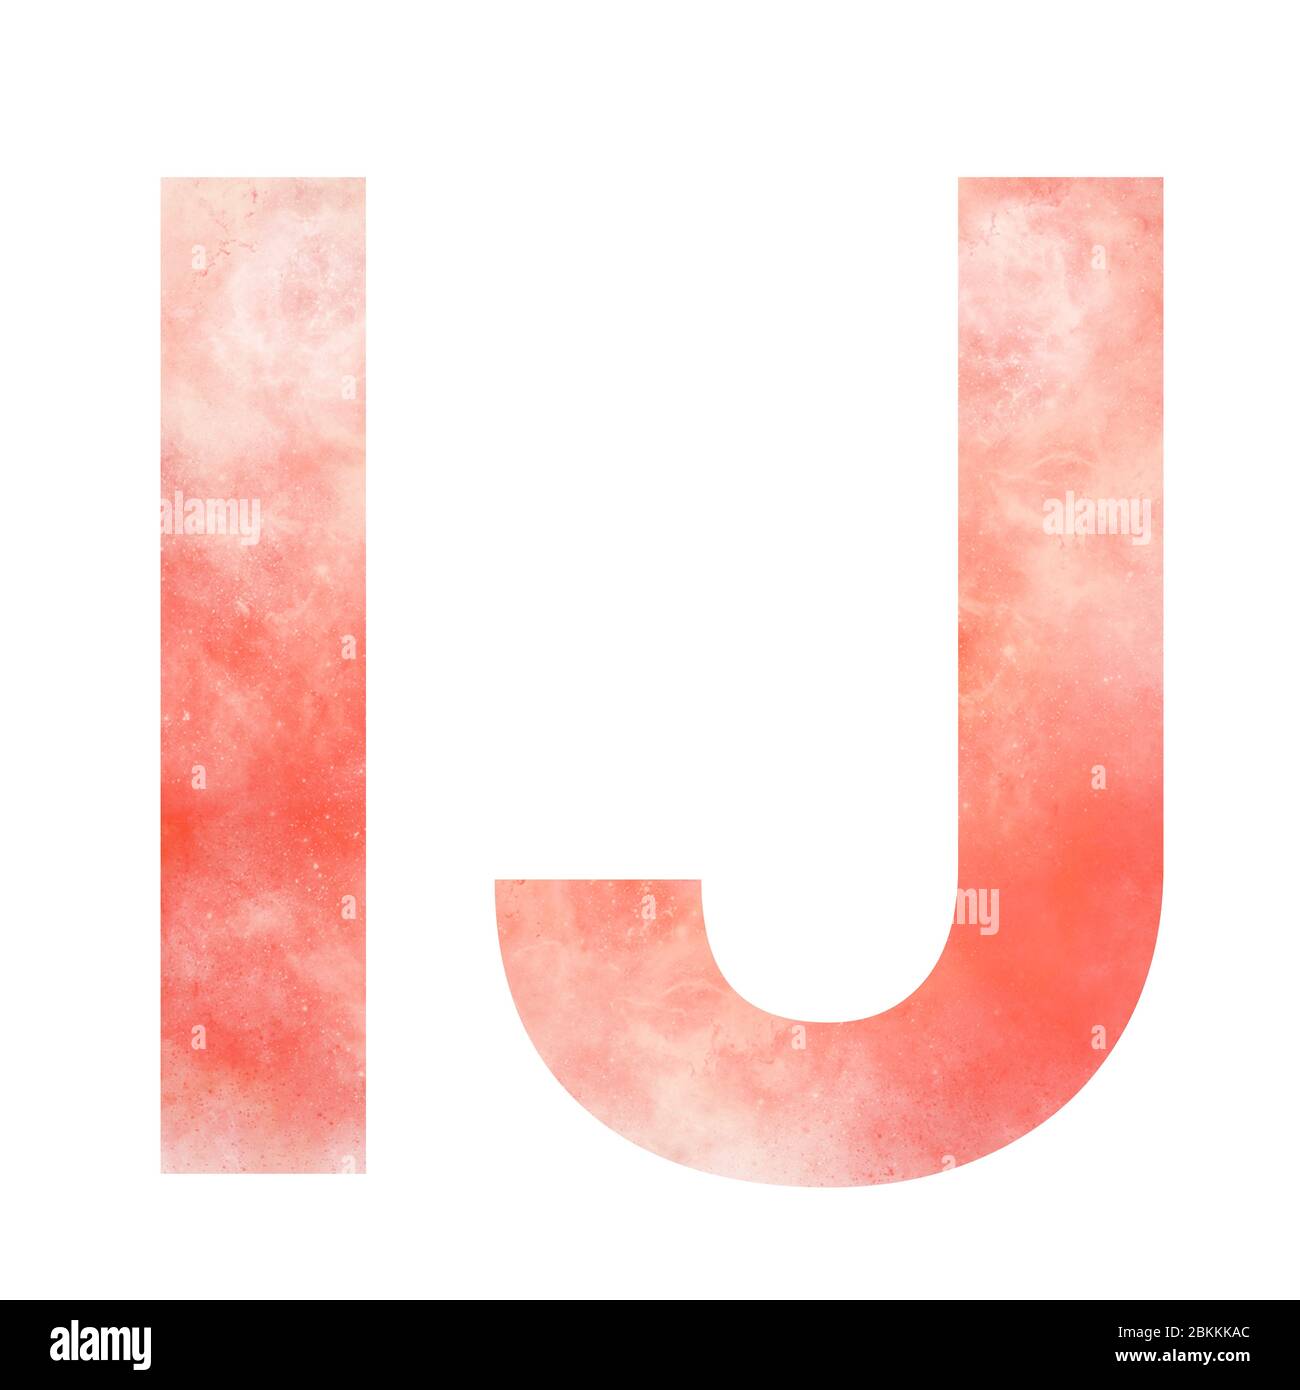 Alfabeto de espacios naranja. Letra mayúscula I y J. Digital art. Aislado sobre fondo blanco. Ilustración de stock. Foto de stock